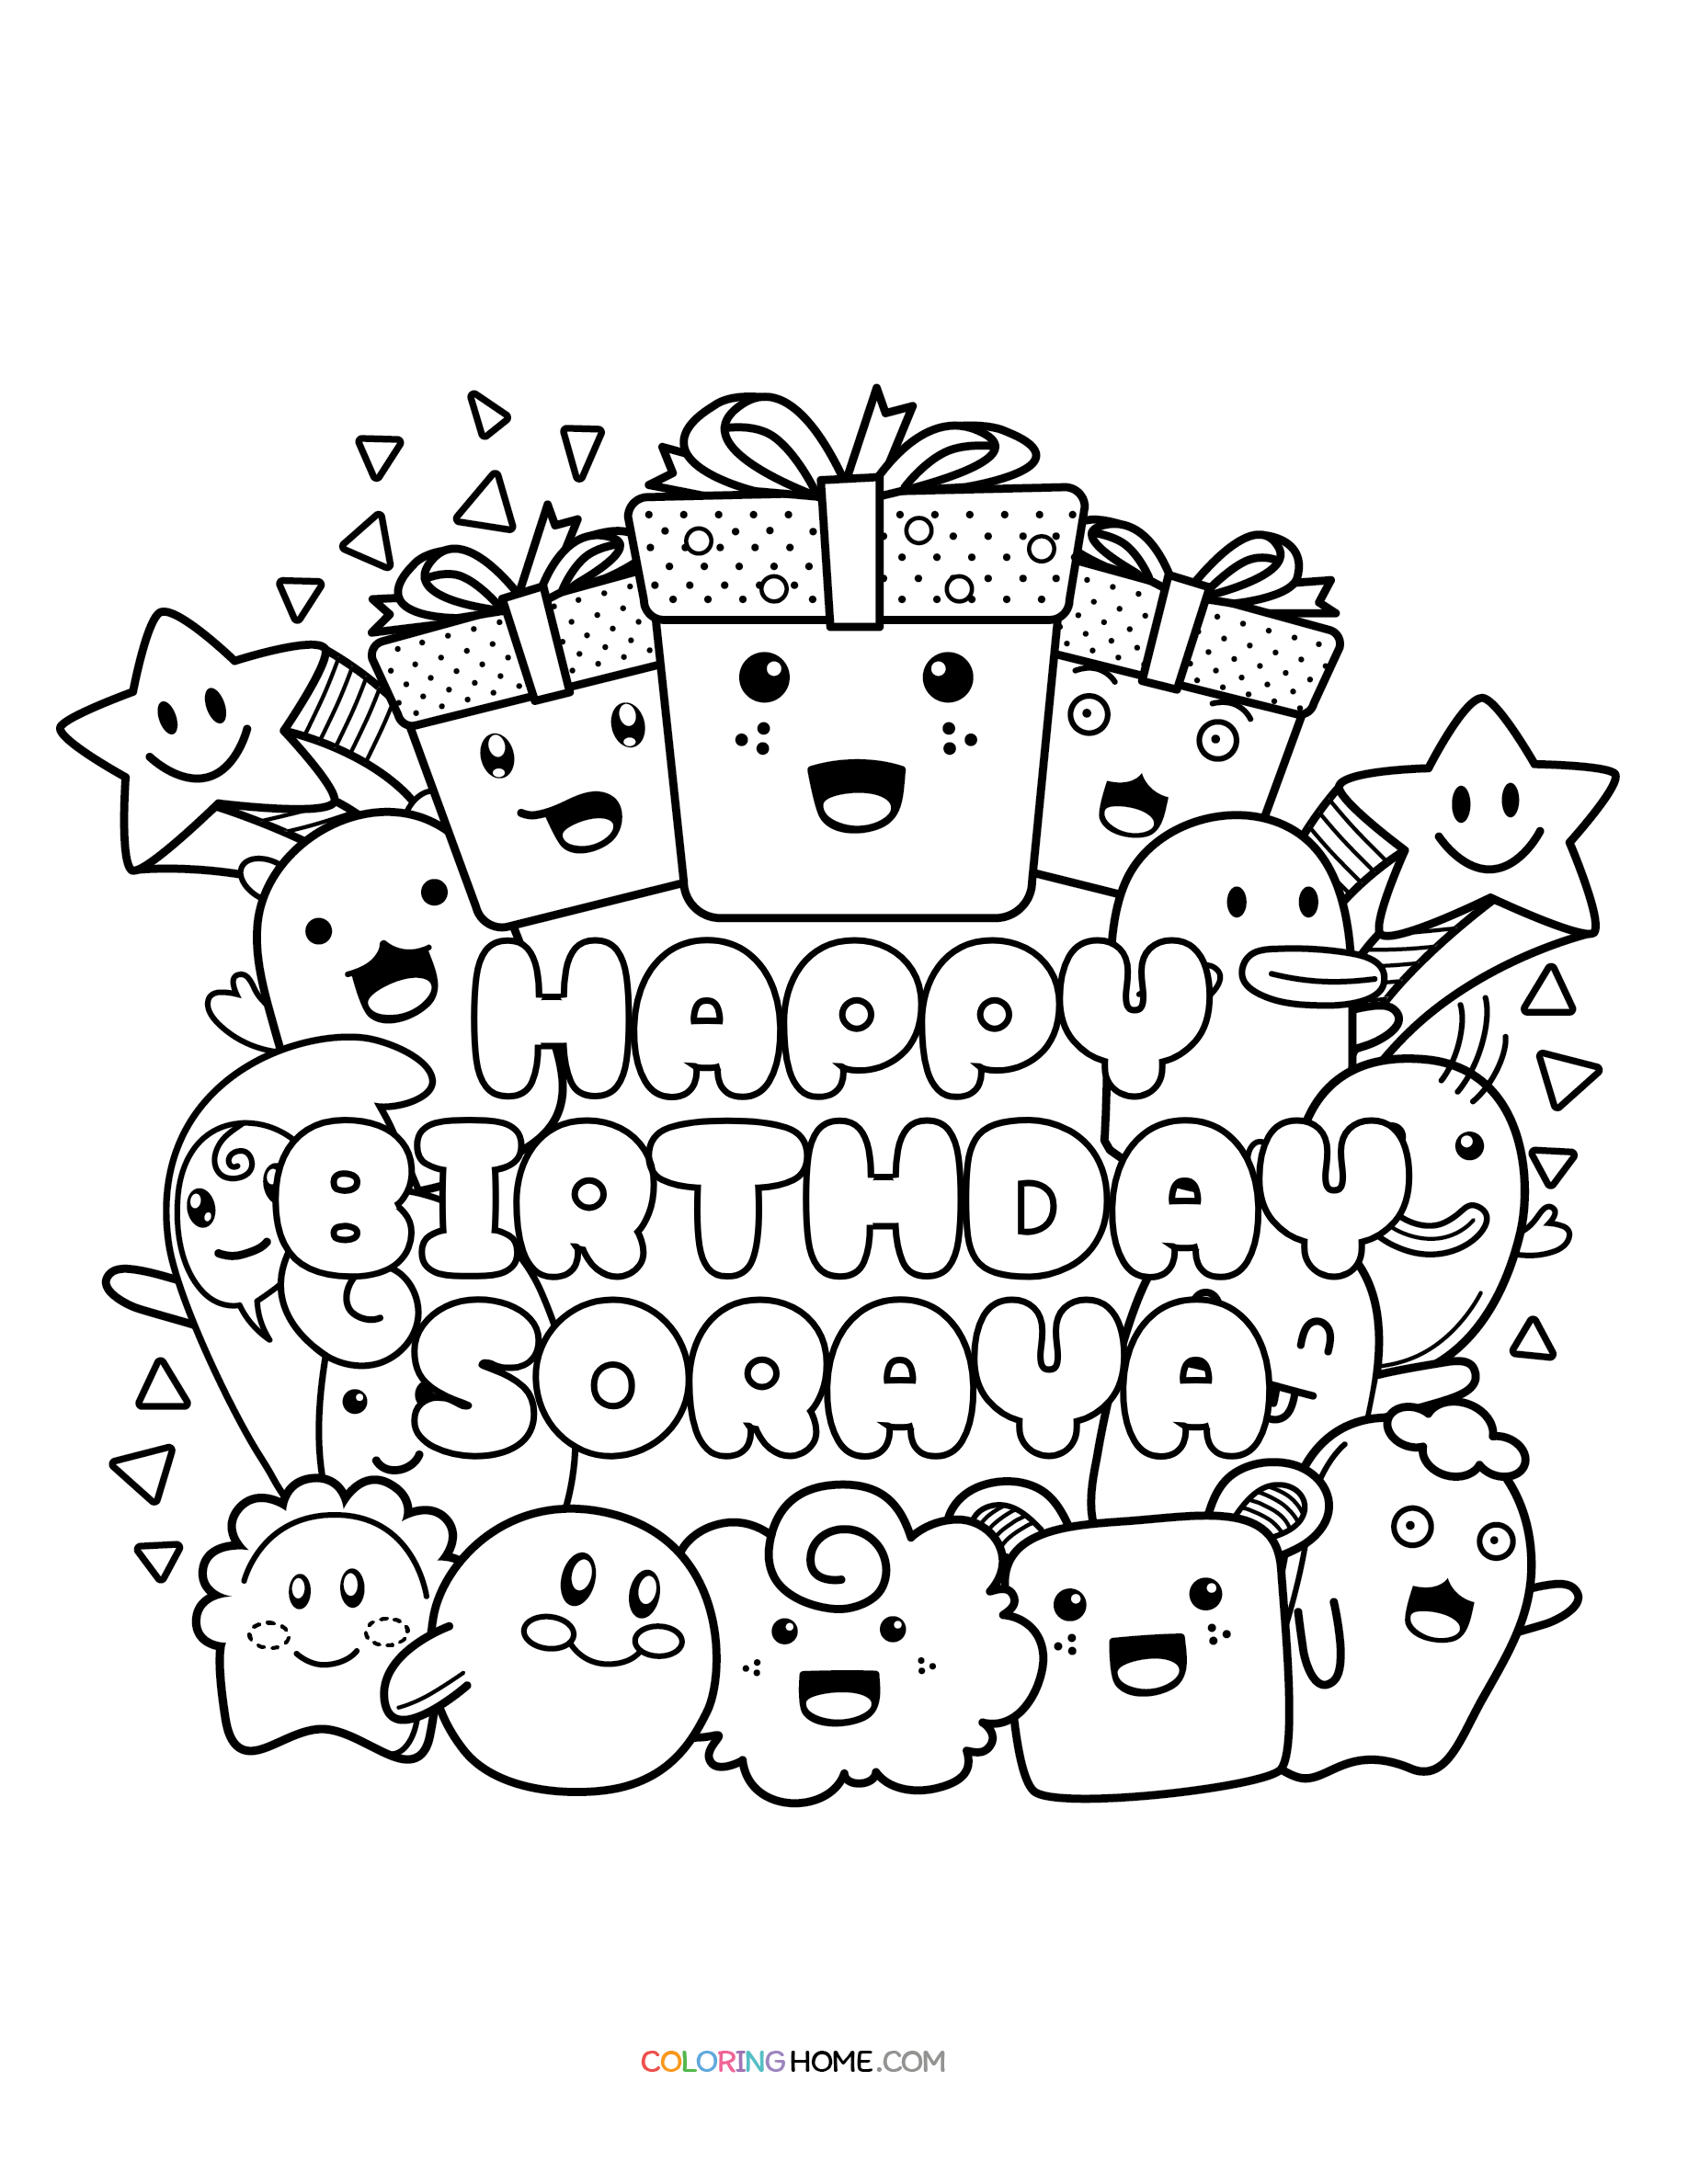 Happy Birthday Soraya coloring page